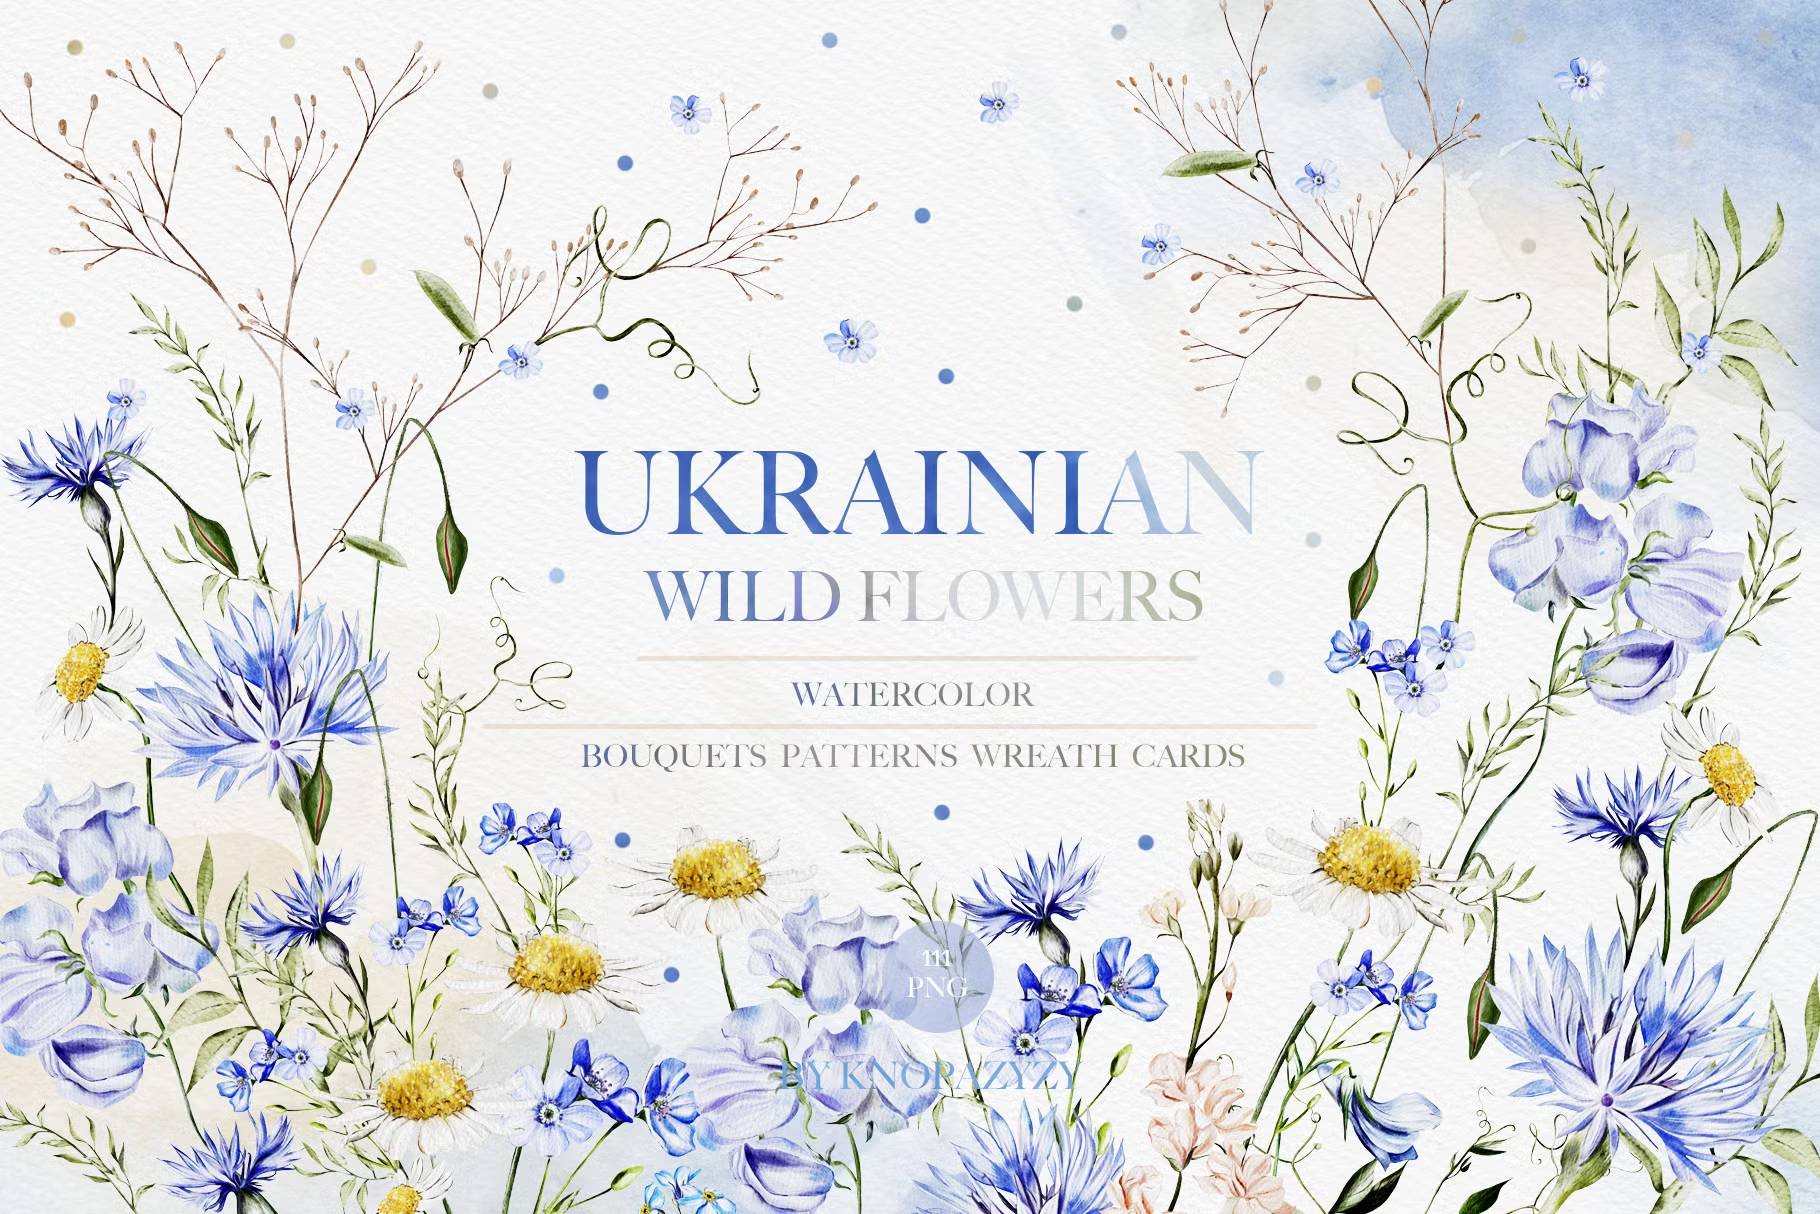 5593 乌克兰野花主题的水彩插画素材